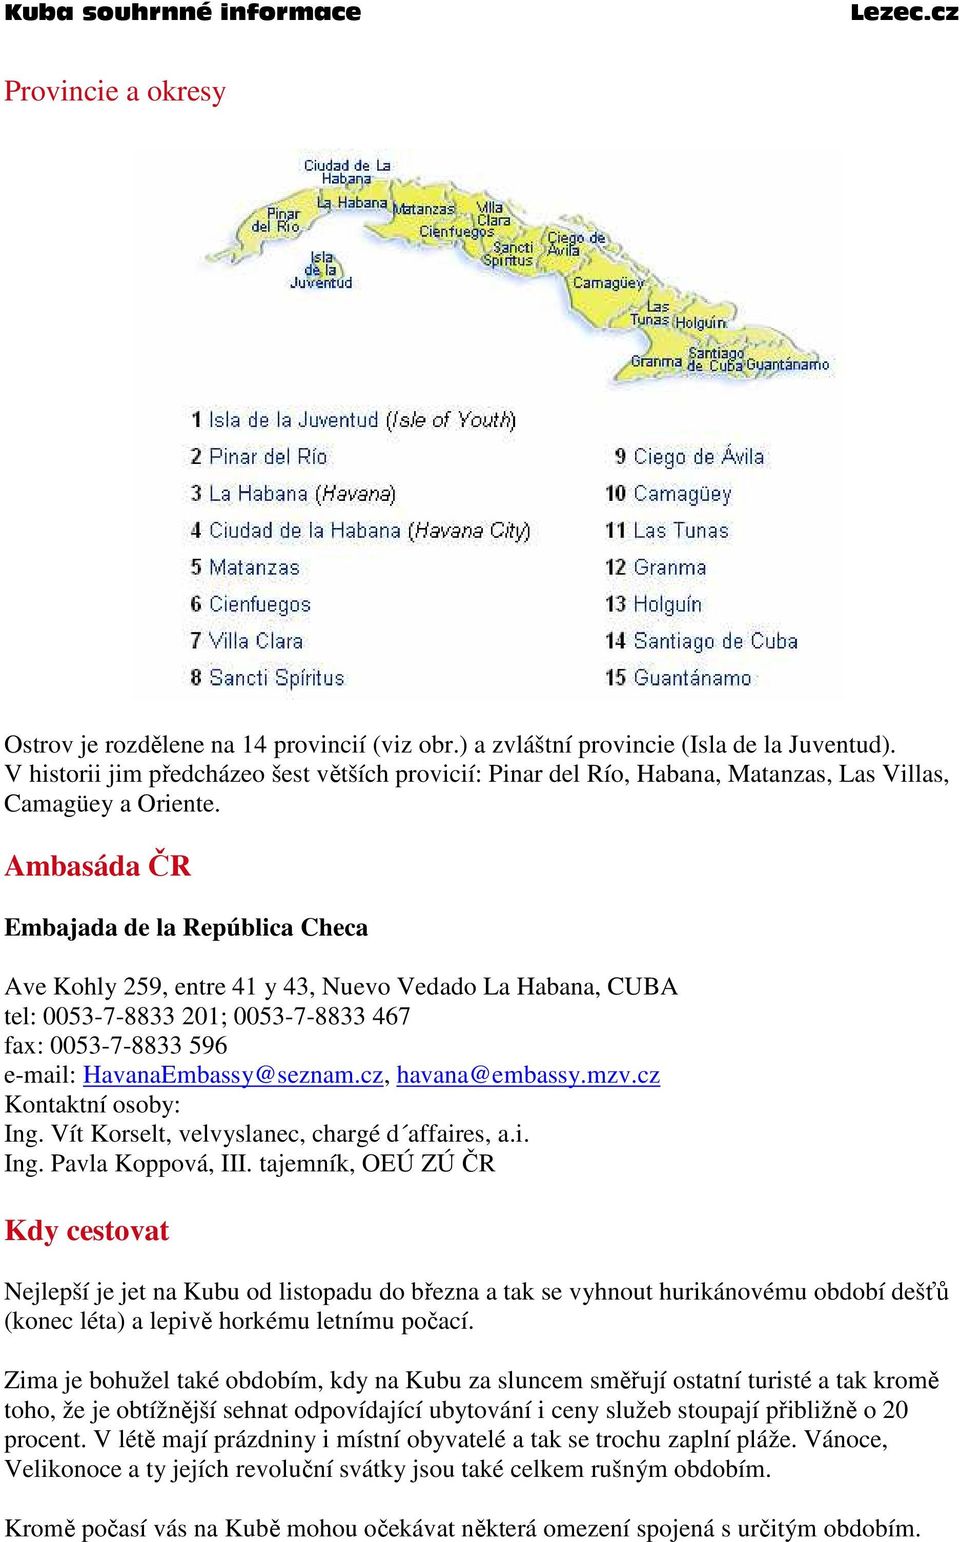 Ambasáda ČR Embajada de la República Checa Ave Kohly 259, entre 41 y 43, Nuevo Vedado La Habana, CUBA tel: 0053-7-8833 201; 0053-7-8833 467 fax: 0053-7-8833 596 e-mail: HavanaEmbassy@seznam.